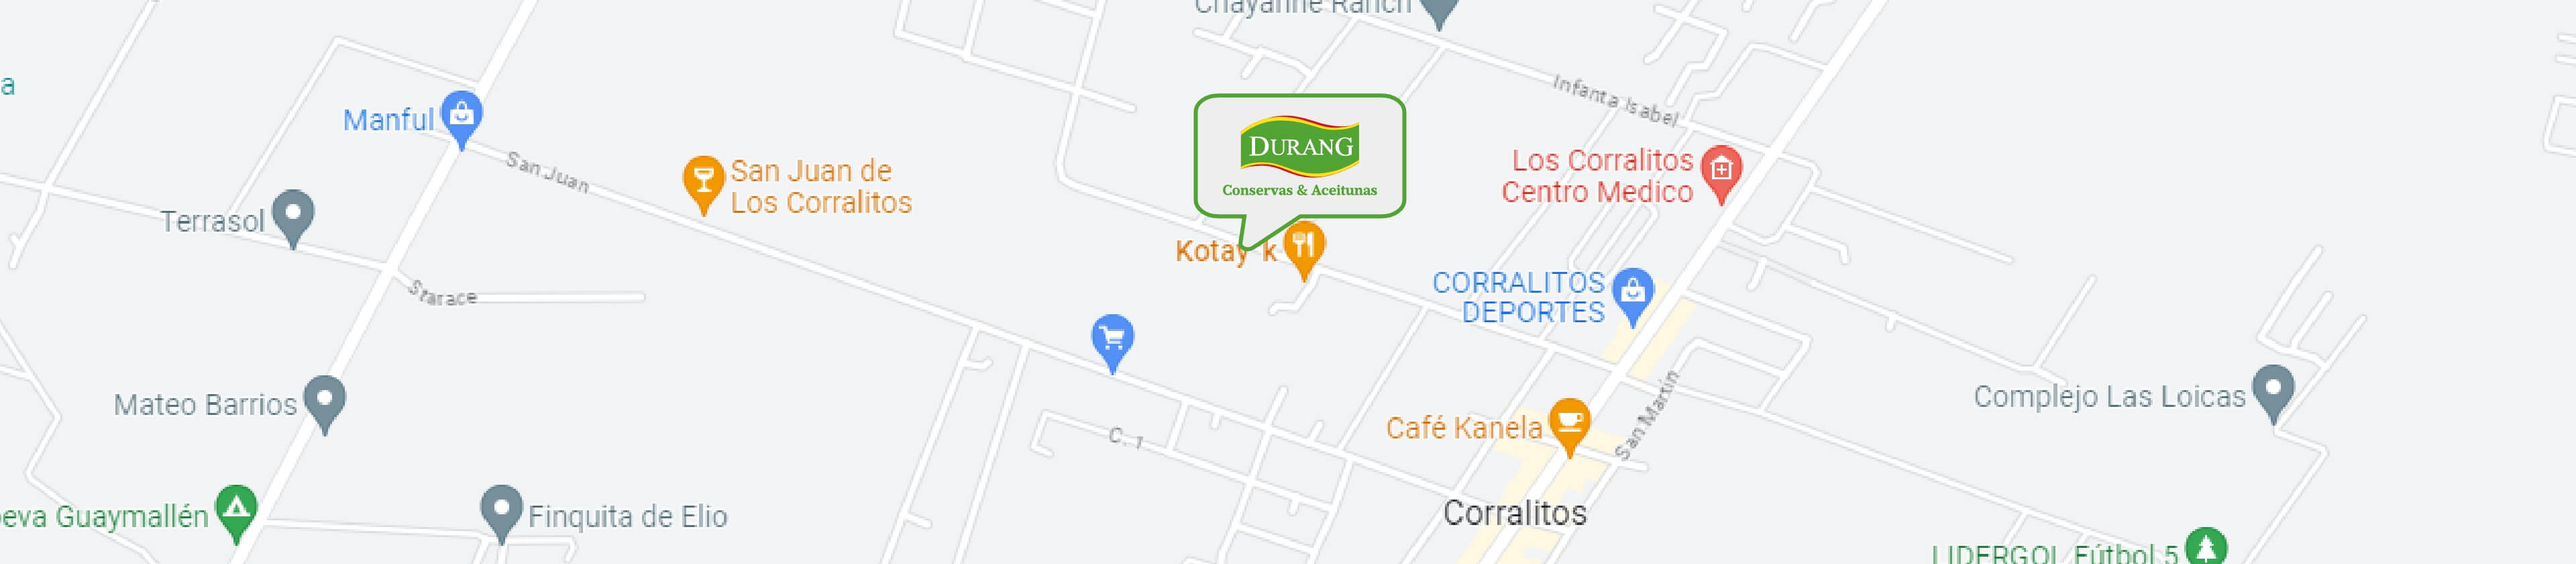 Durang_Contacto_Mapa